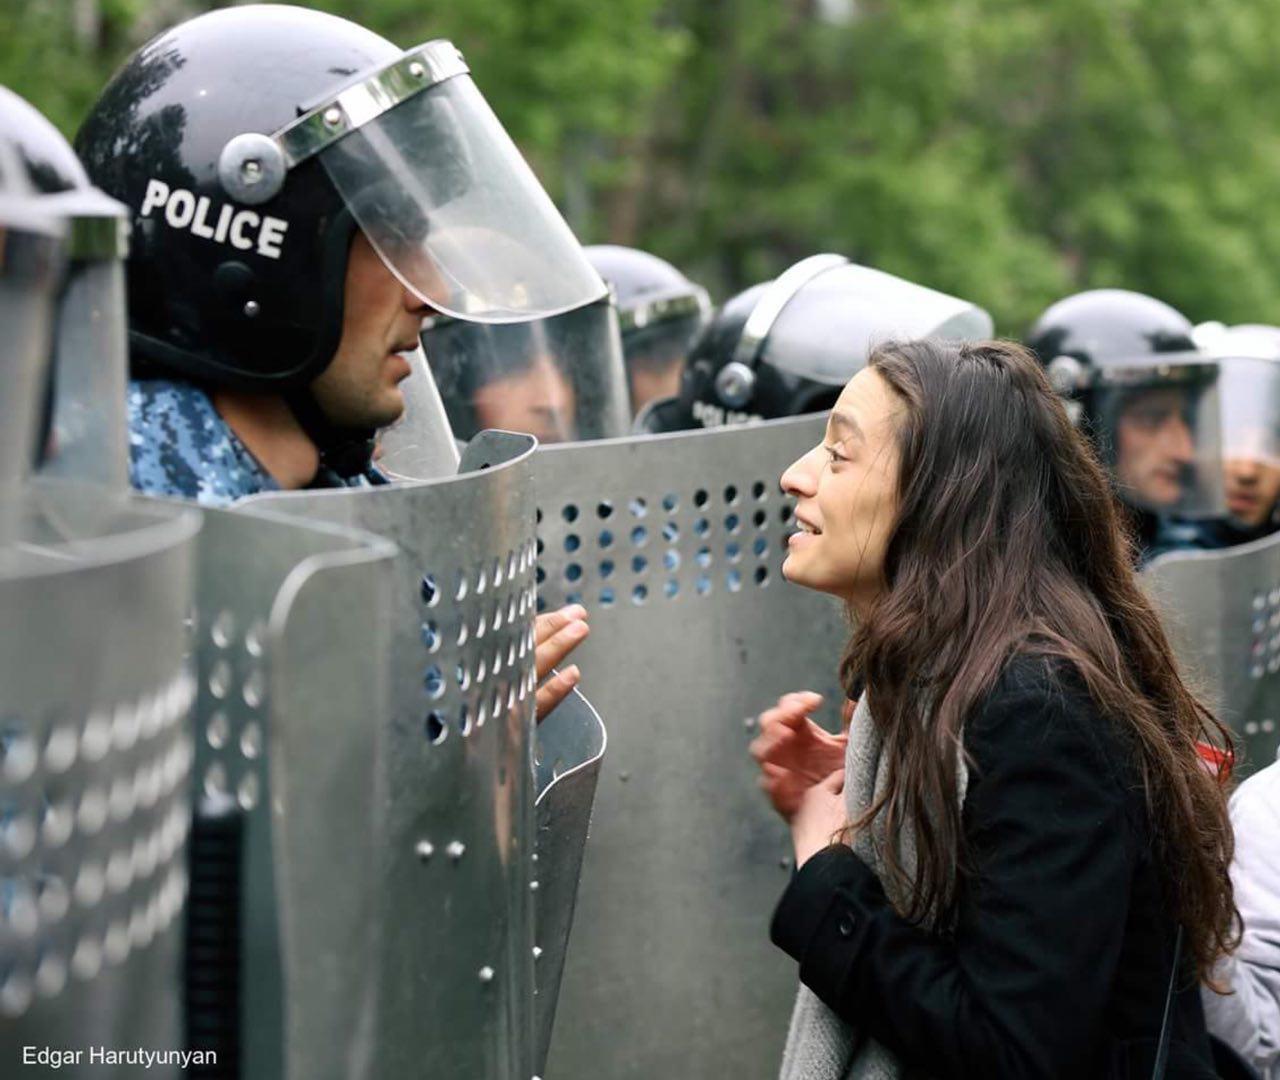 "Оксамитова революція" в Єревані: почалися масові затримання